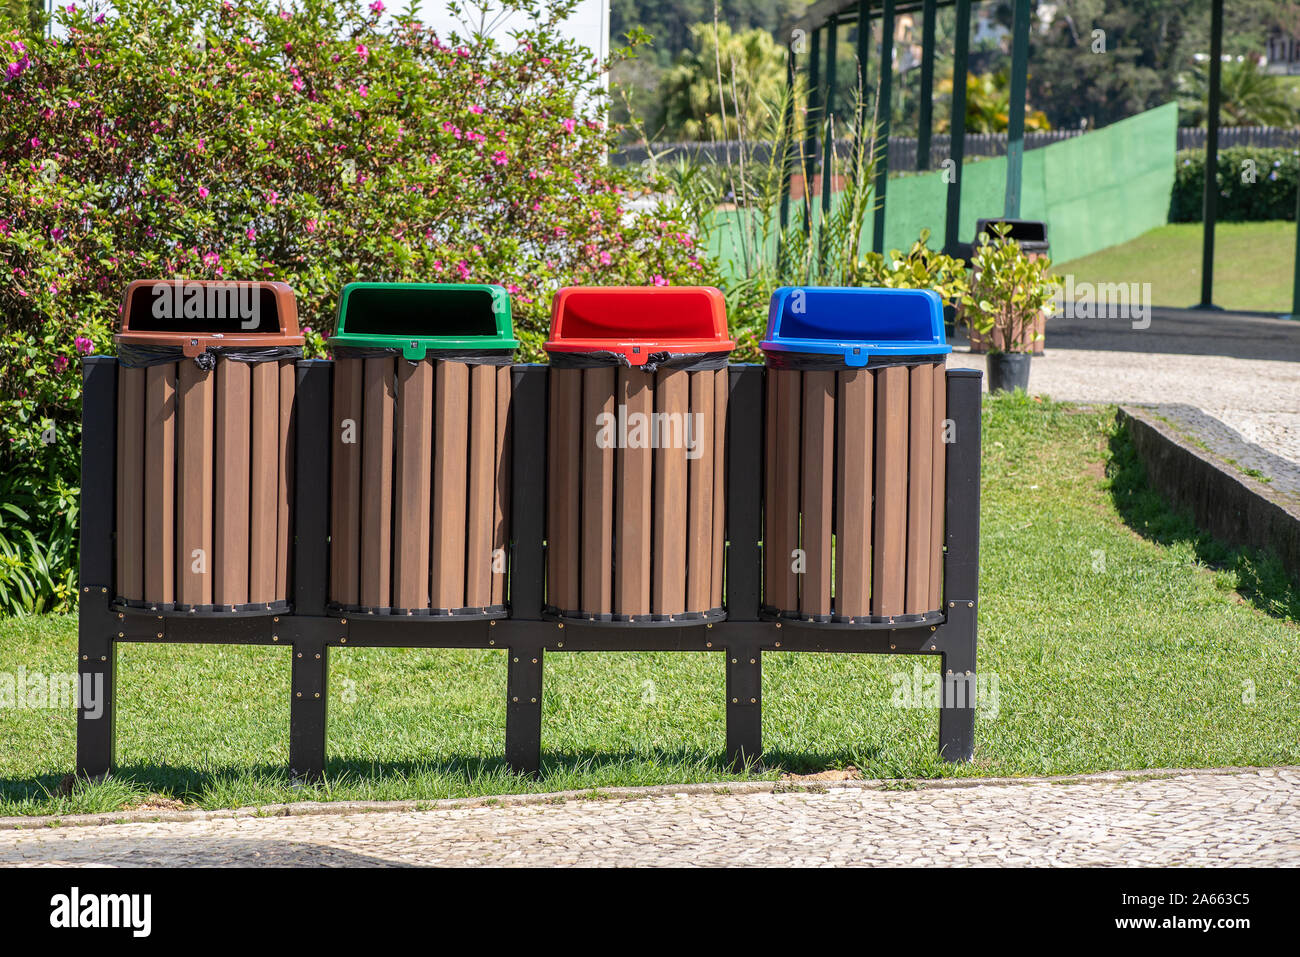 Vier recycling Bins in den Farben Rot, Blau, Grün, Braun, in einem öffentlichen Park, draußen, Vorderansicht, keine Logos Stockfoto